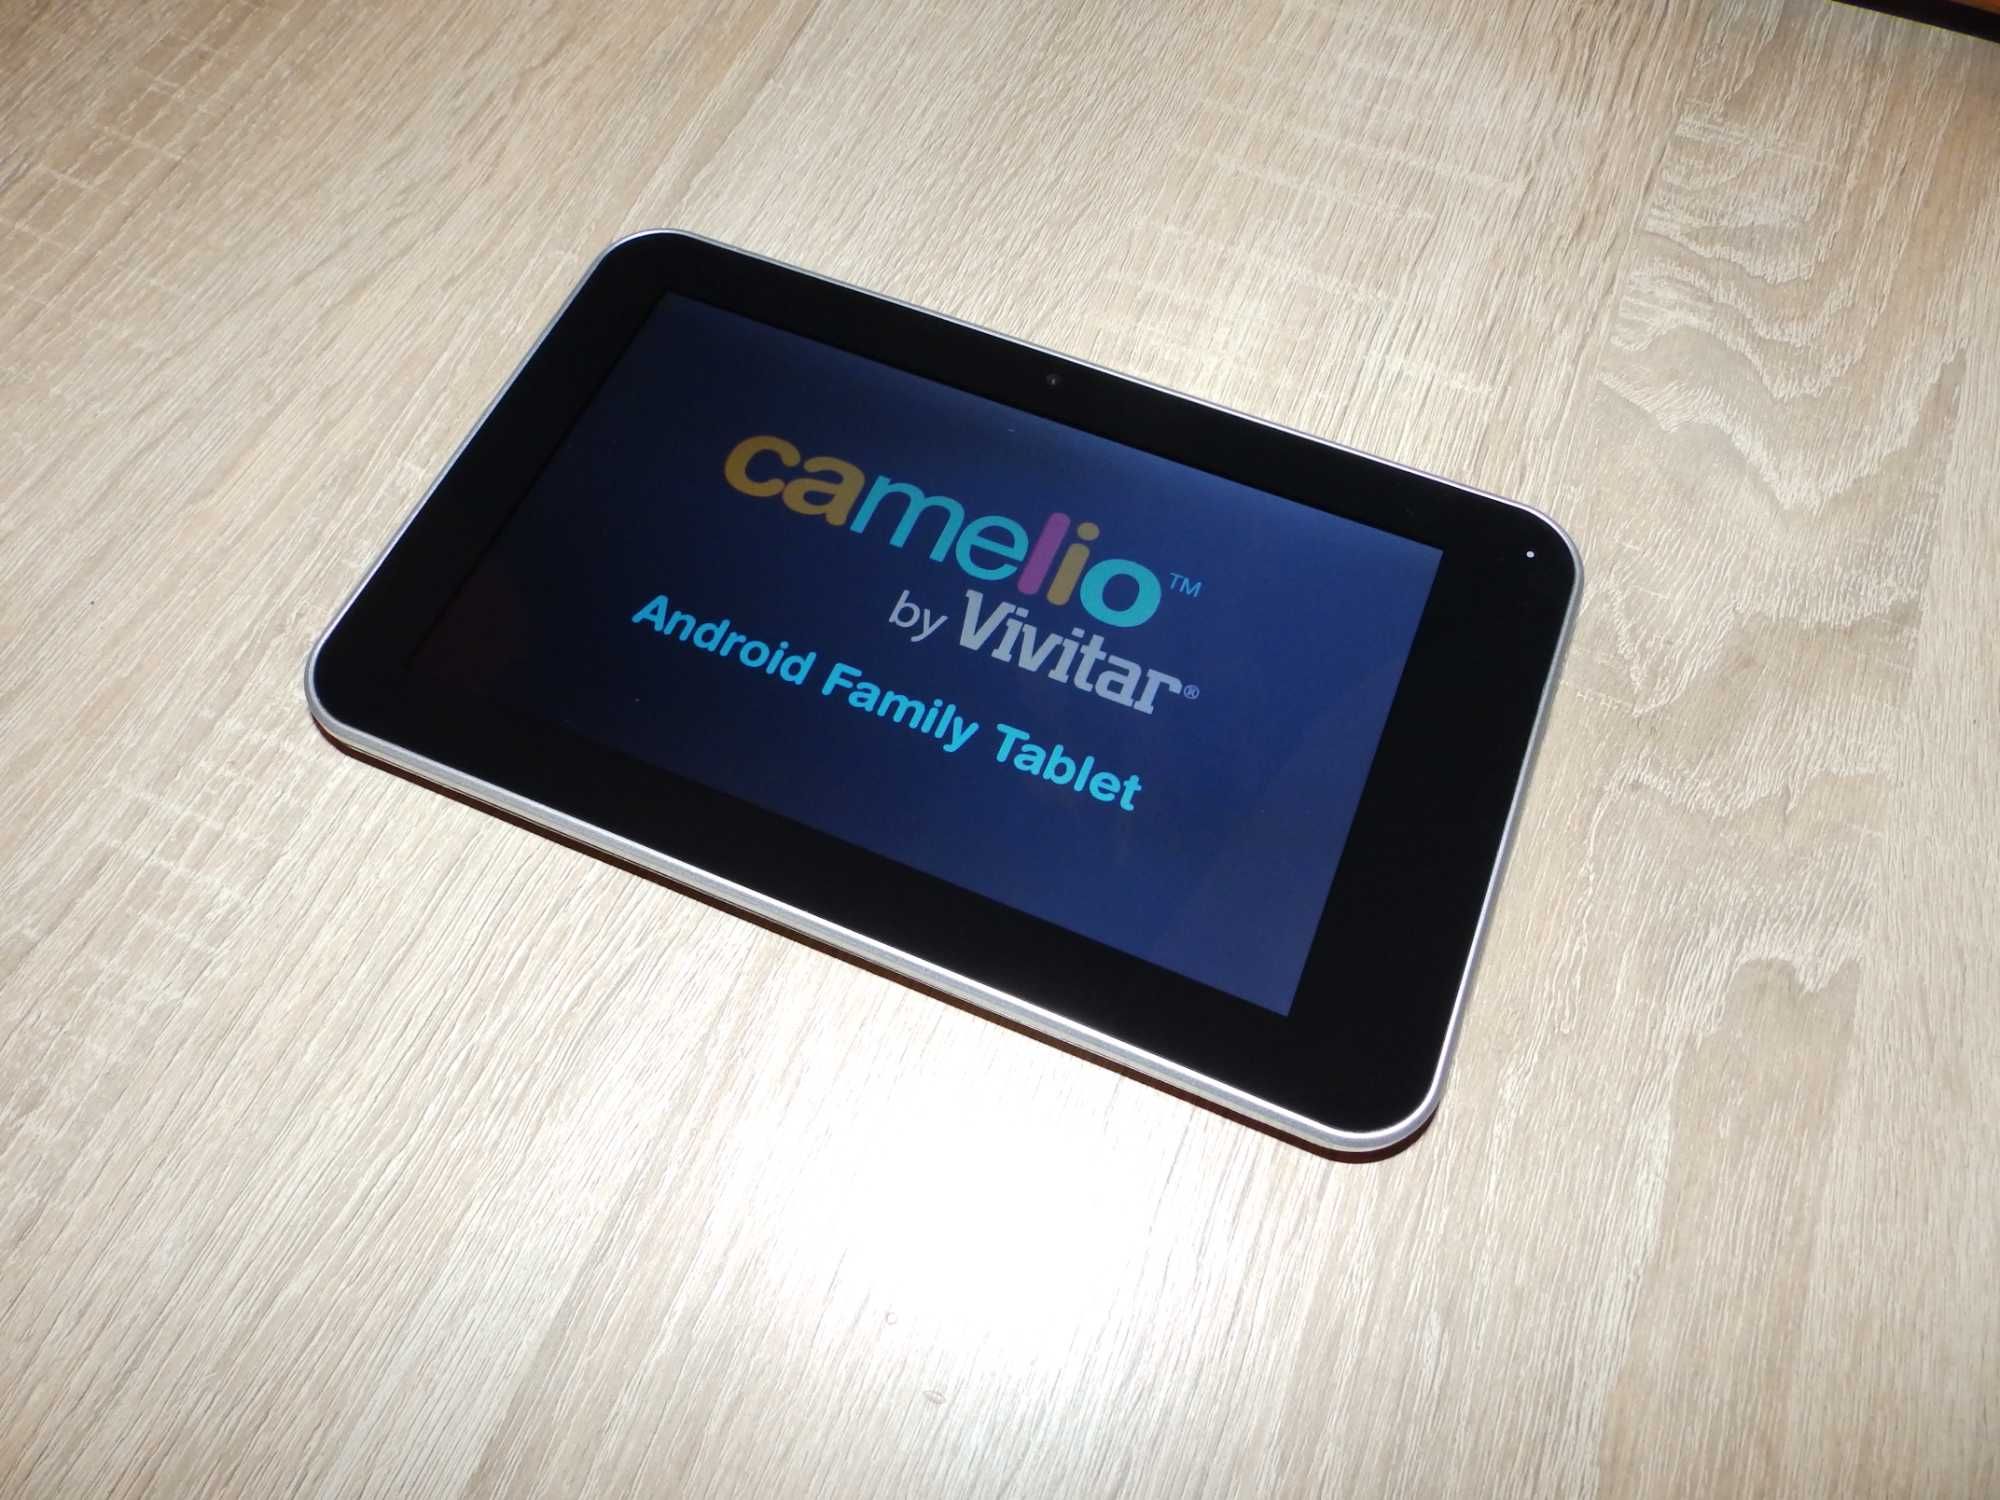 Планшет Vivitar Camelio Android Family Tablet Читать Описание !!!